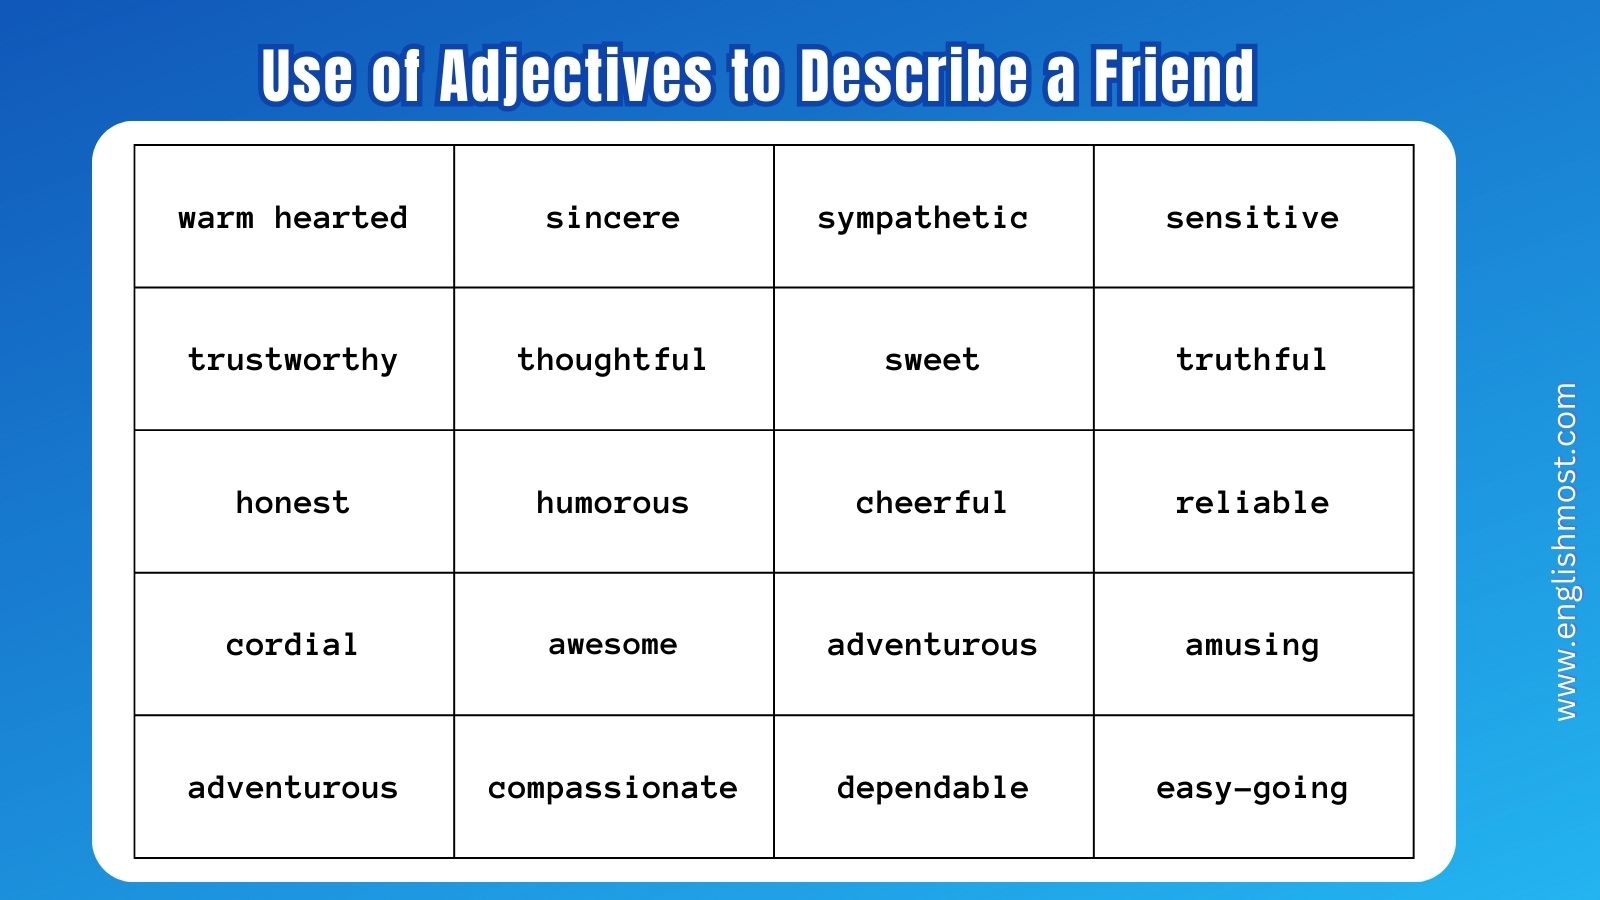 adjectives to describe a friend, describe a friend, how to describe a friend